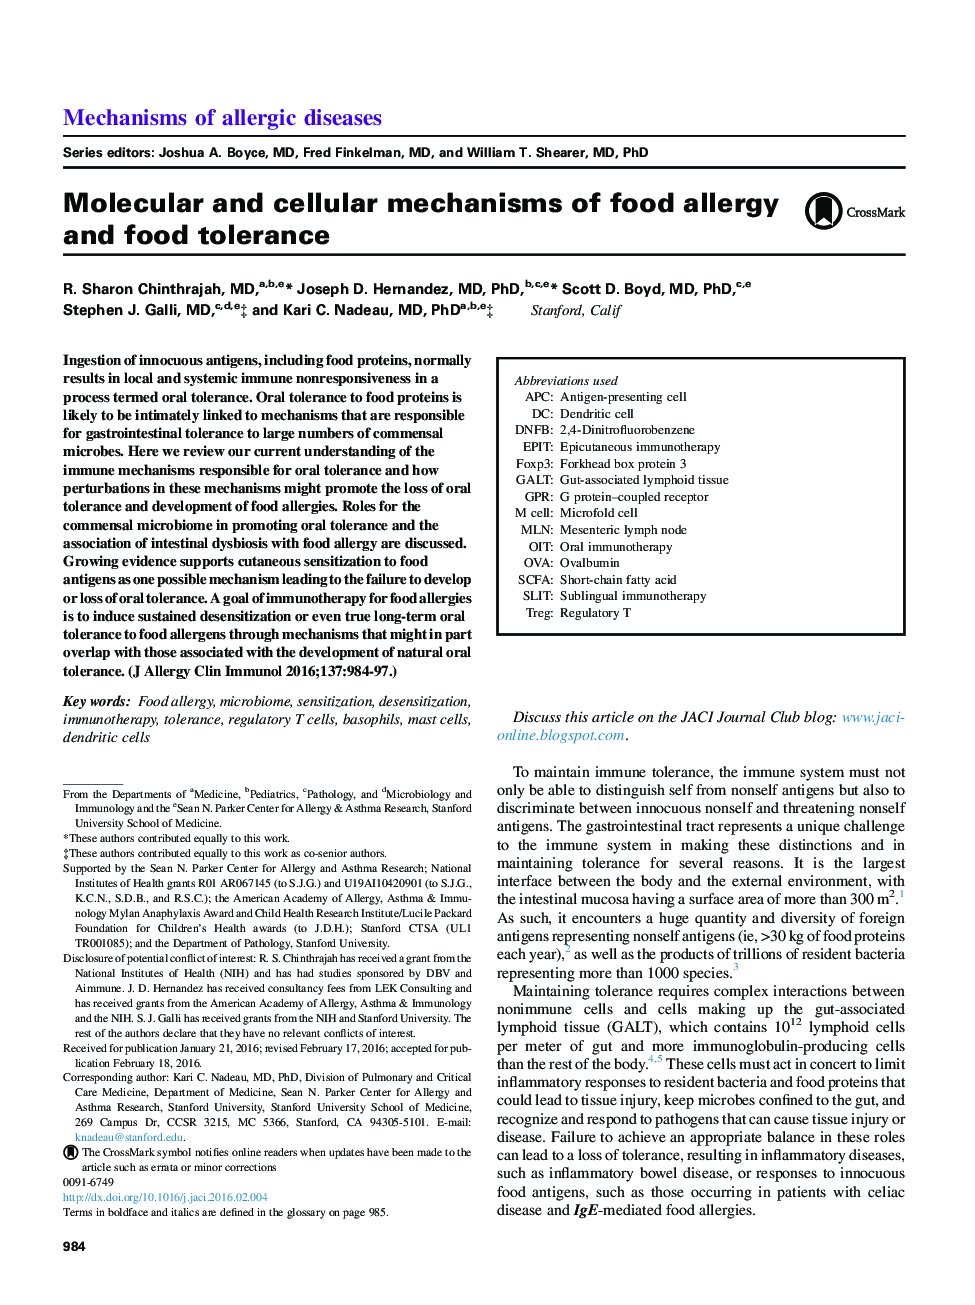 مکانیسم های مولکولی و سلولی آلرژی غذایی و تحمل مواد غذایی 